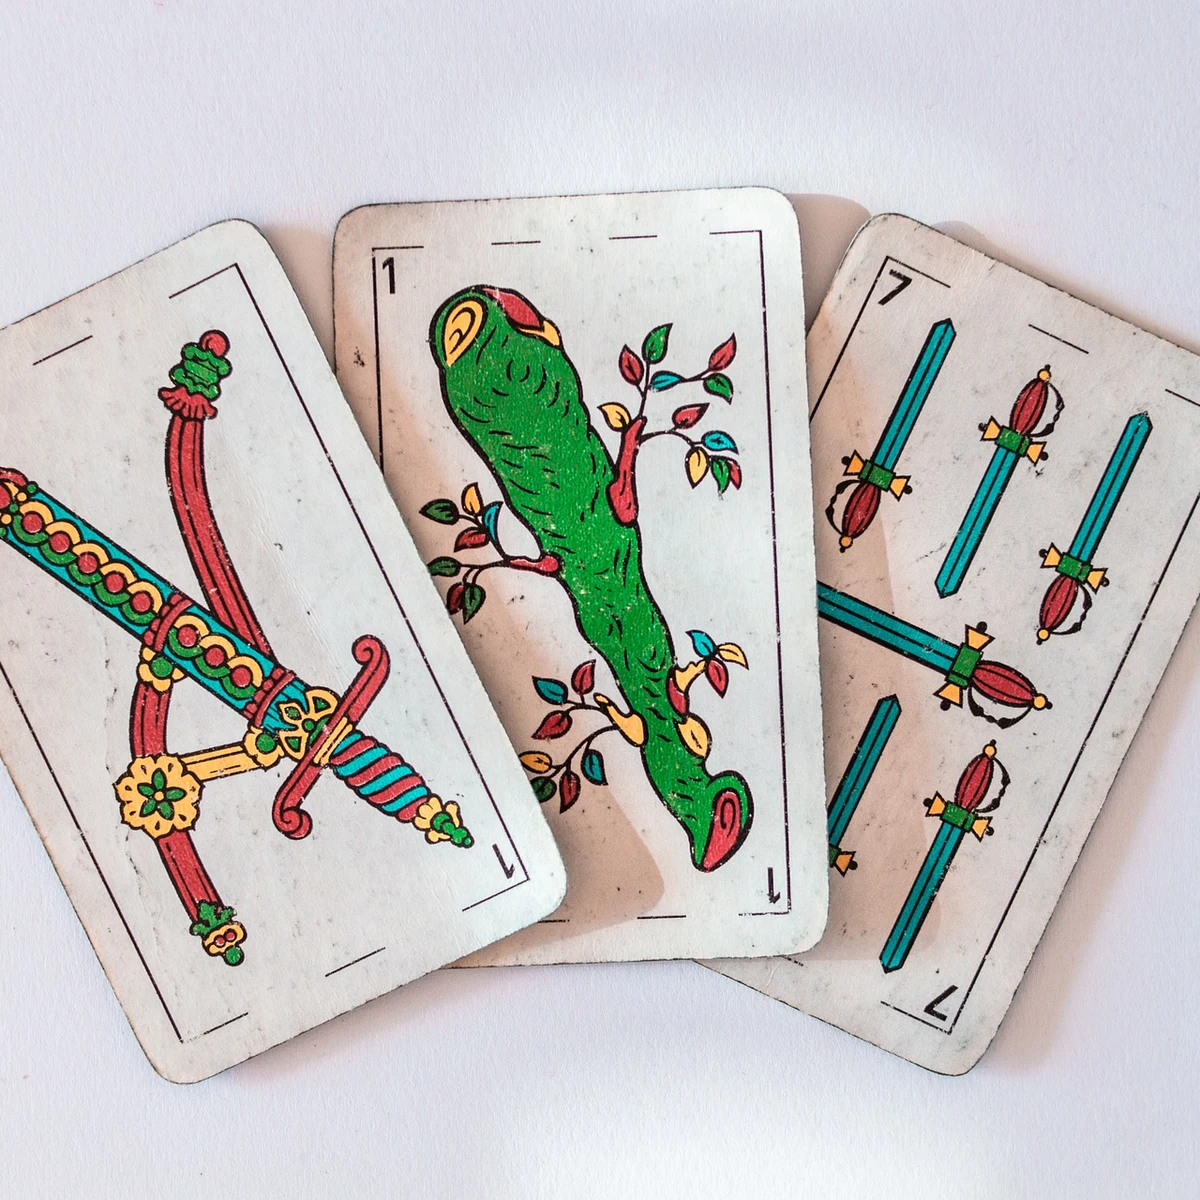 Puntero imperdonable Subjetivo Cómo jugar al solitario con las cartas españolas